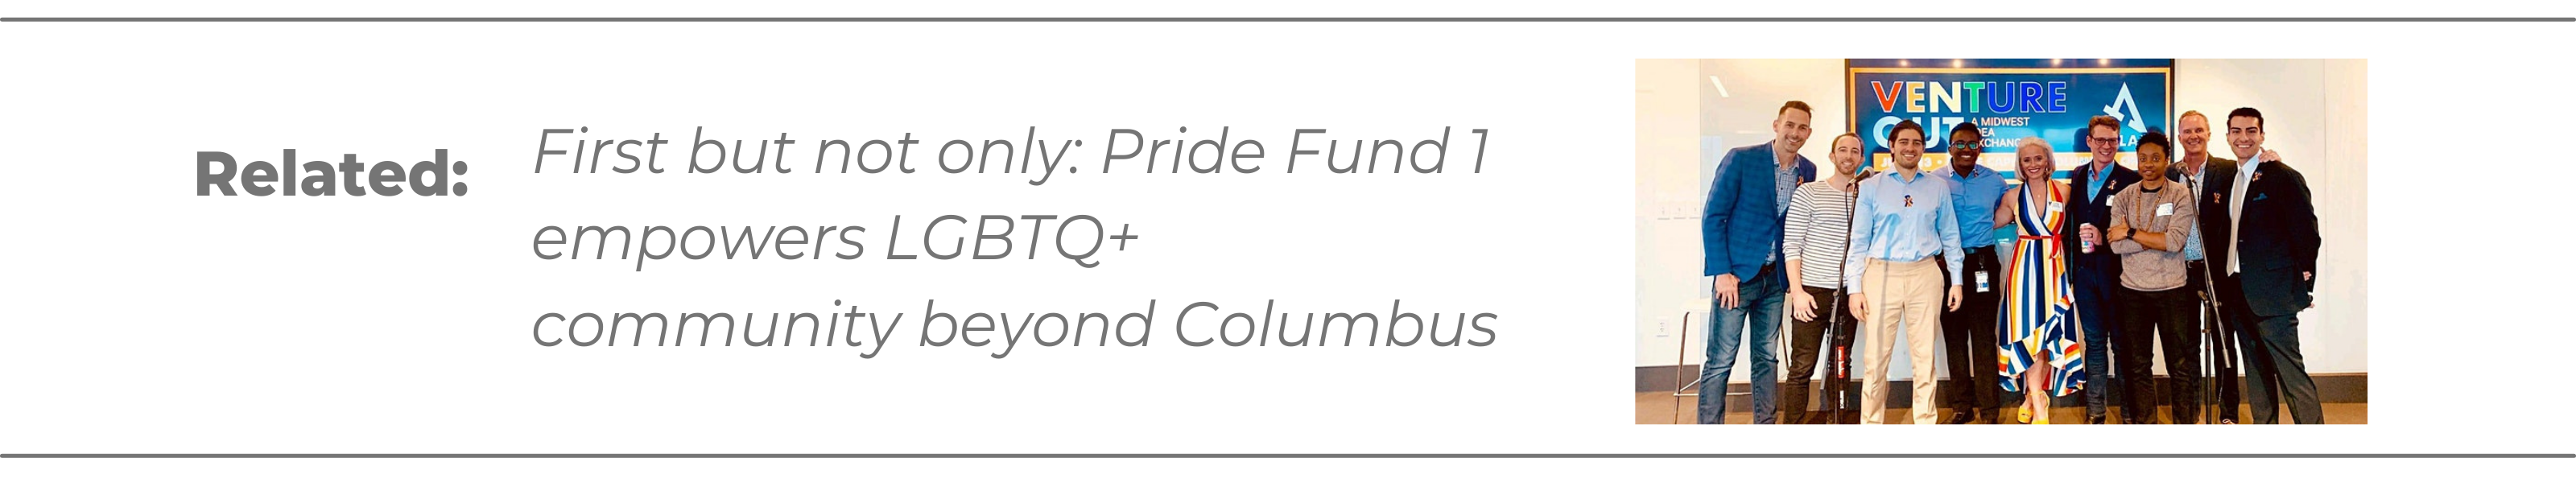 Pride-Fund-1